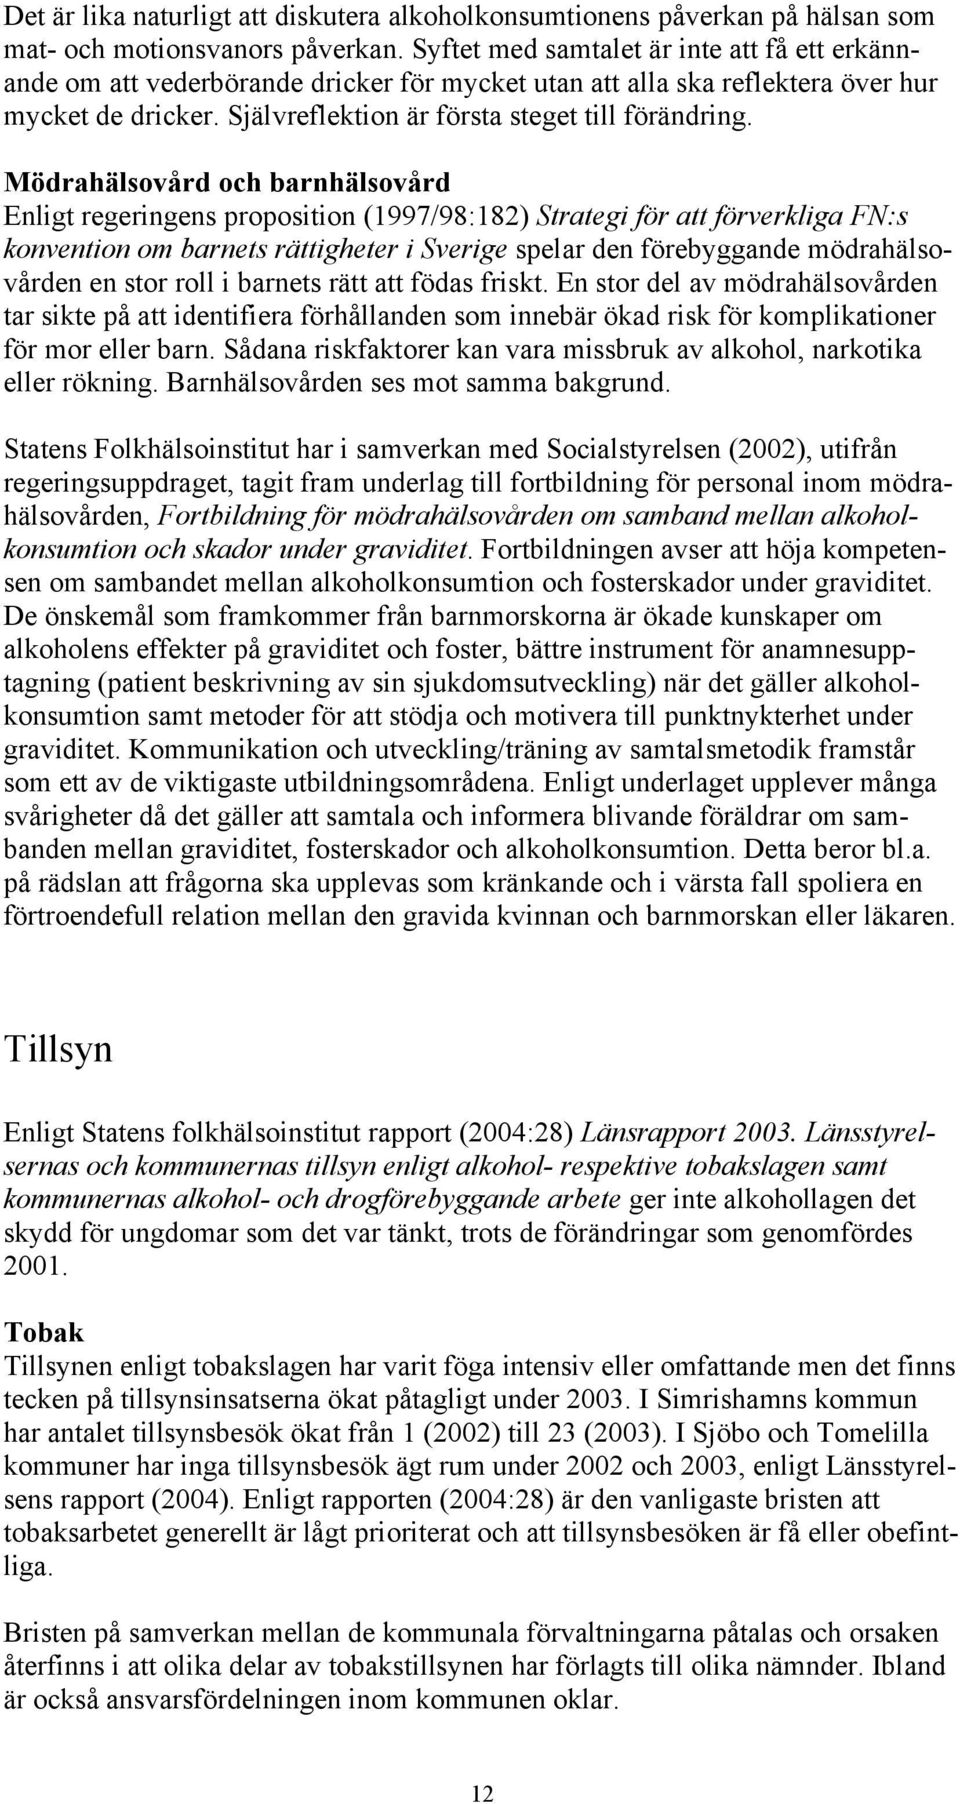 Mödrahälsovård och barnhälsovård Enligt regeringens proposition (1997/98:182) Strategi för att förverkliga FN:s konvention om barnets rättigheter i Sverige spelar den förebyggande mödrahälsovården en